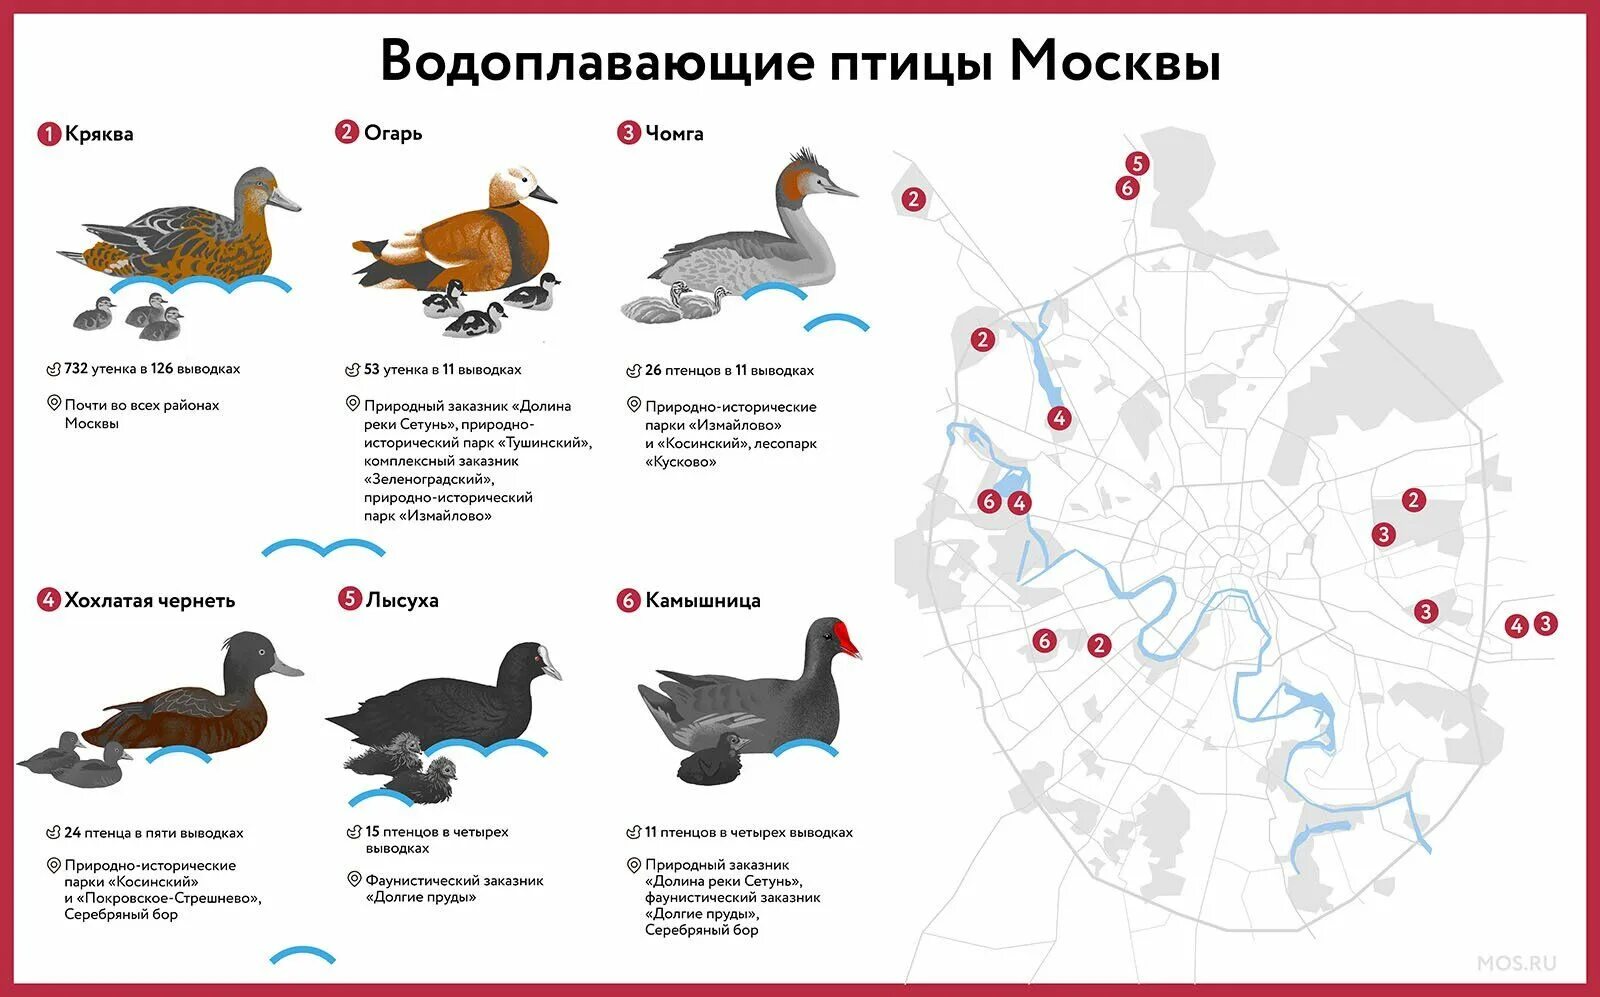 В каких районах обитаешь. Водоплавающие птицы названия. Водные птицы список. Где обитают водоплавающие птицы. Карта водоплавающих птиц.